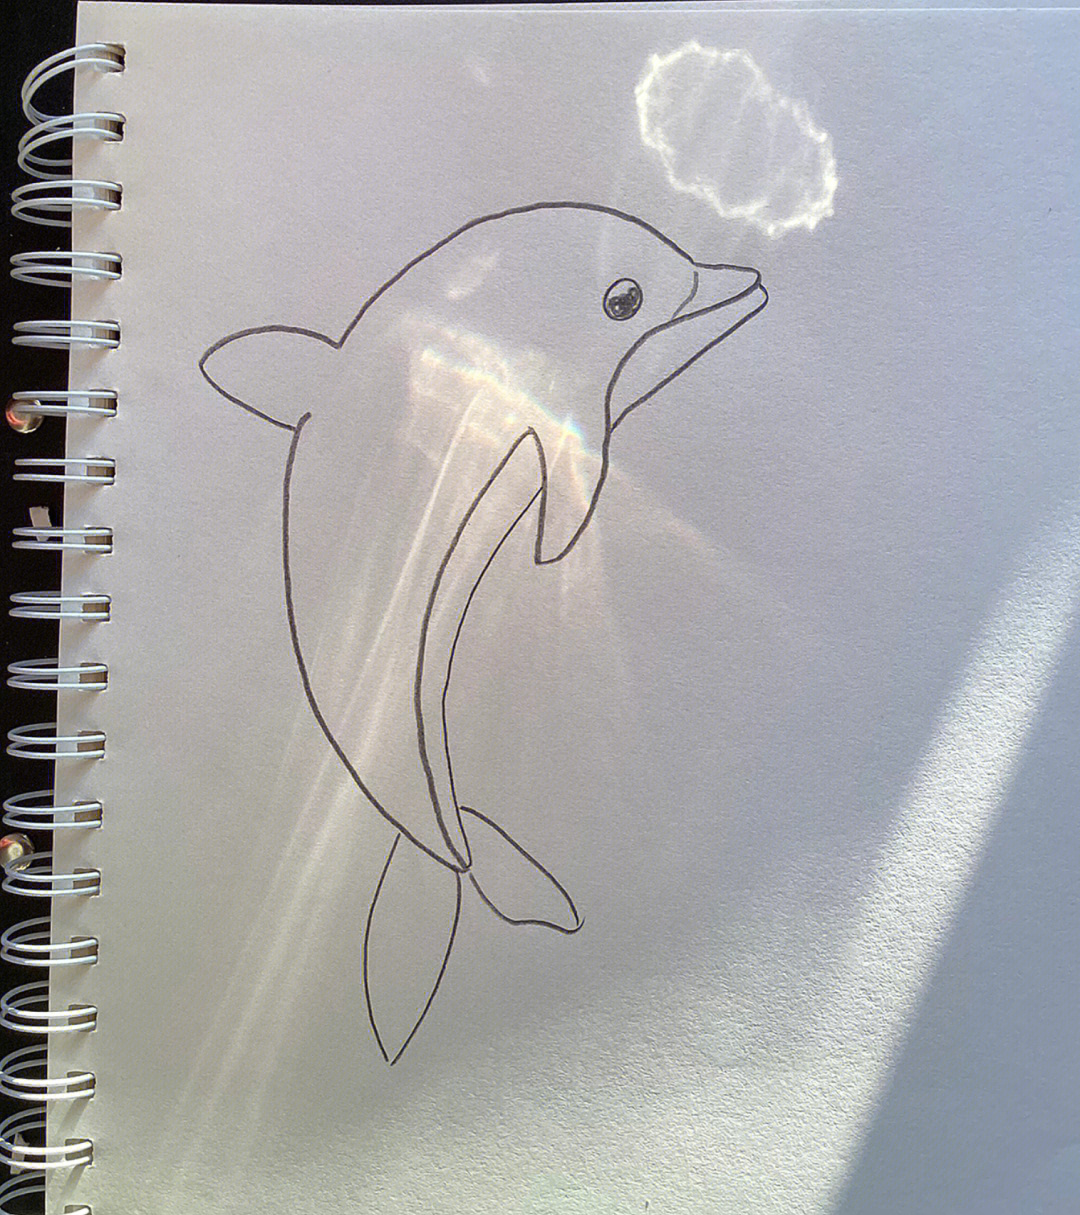 海豚的画法 简笔画图片